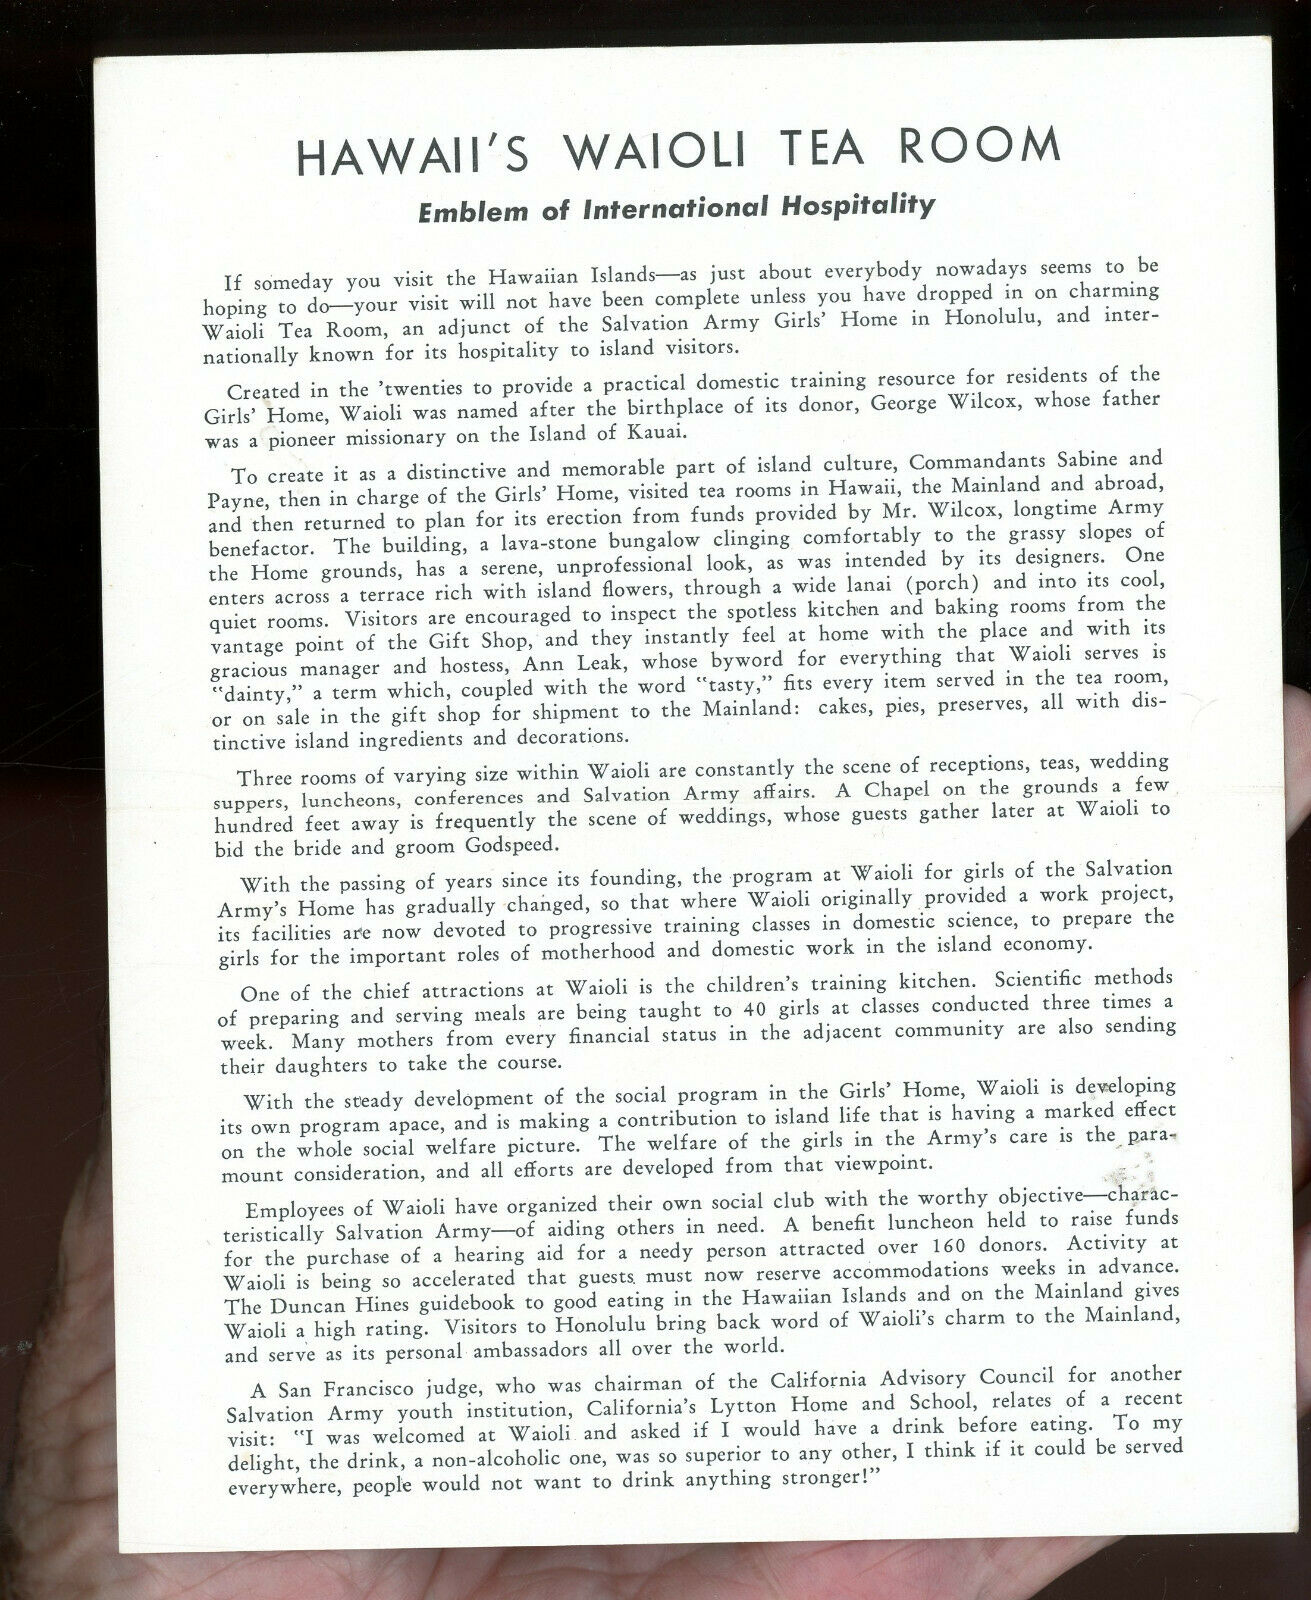 Hawaii-Waioli Tea Room-Salvation Army